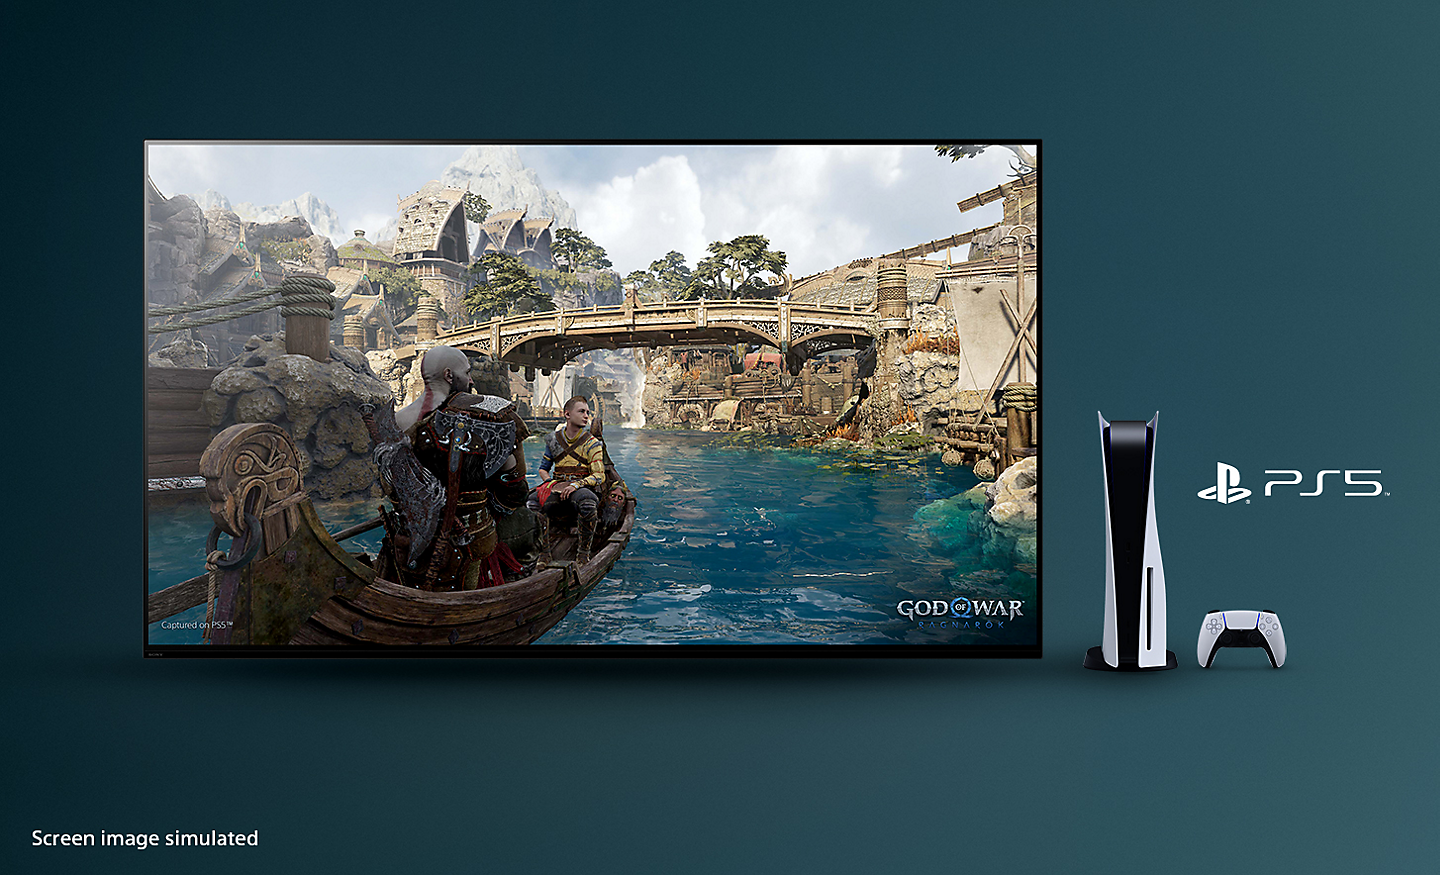 BRAVIA 電視截圖展示《戰神：諸神黃昏》的畫面，背景為一艘在河上漂流的小船和橋樑，電視右邊擺放著 PS5™ 主機和控制器，同時顯示 PS5™ 的標誌